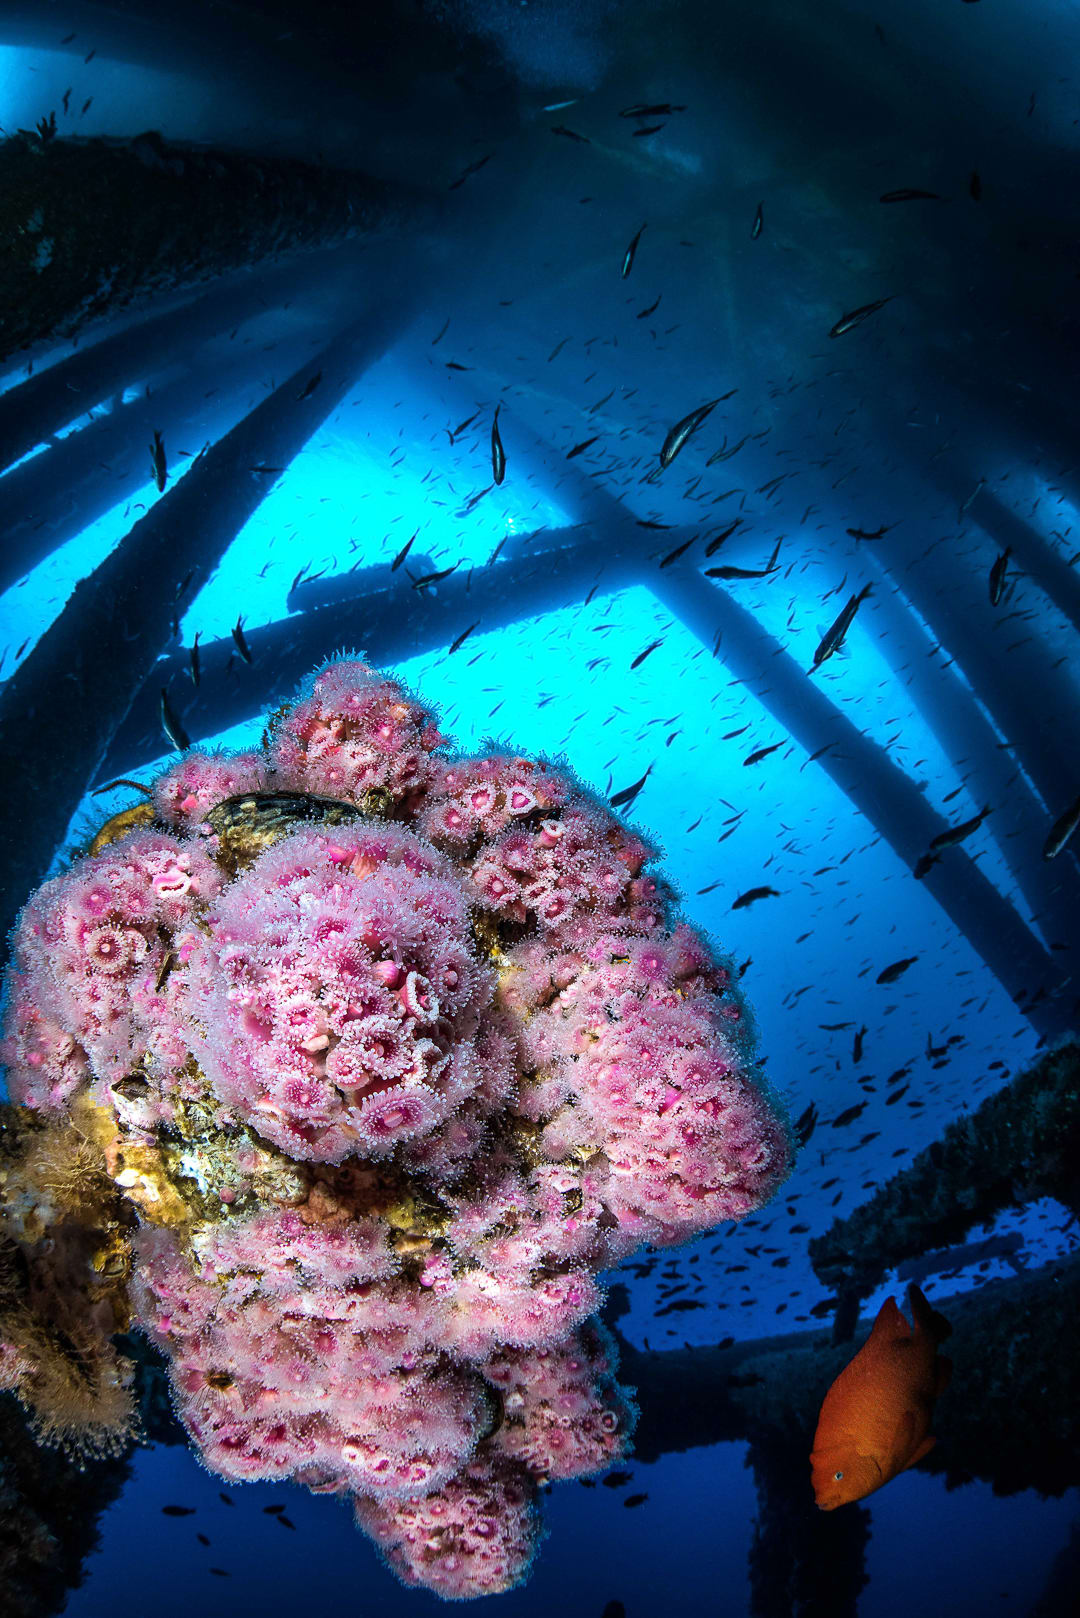 fotógrafo documentando "cara humana" En una encantadora escena submarina, ¿lo ves?